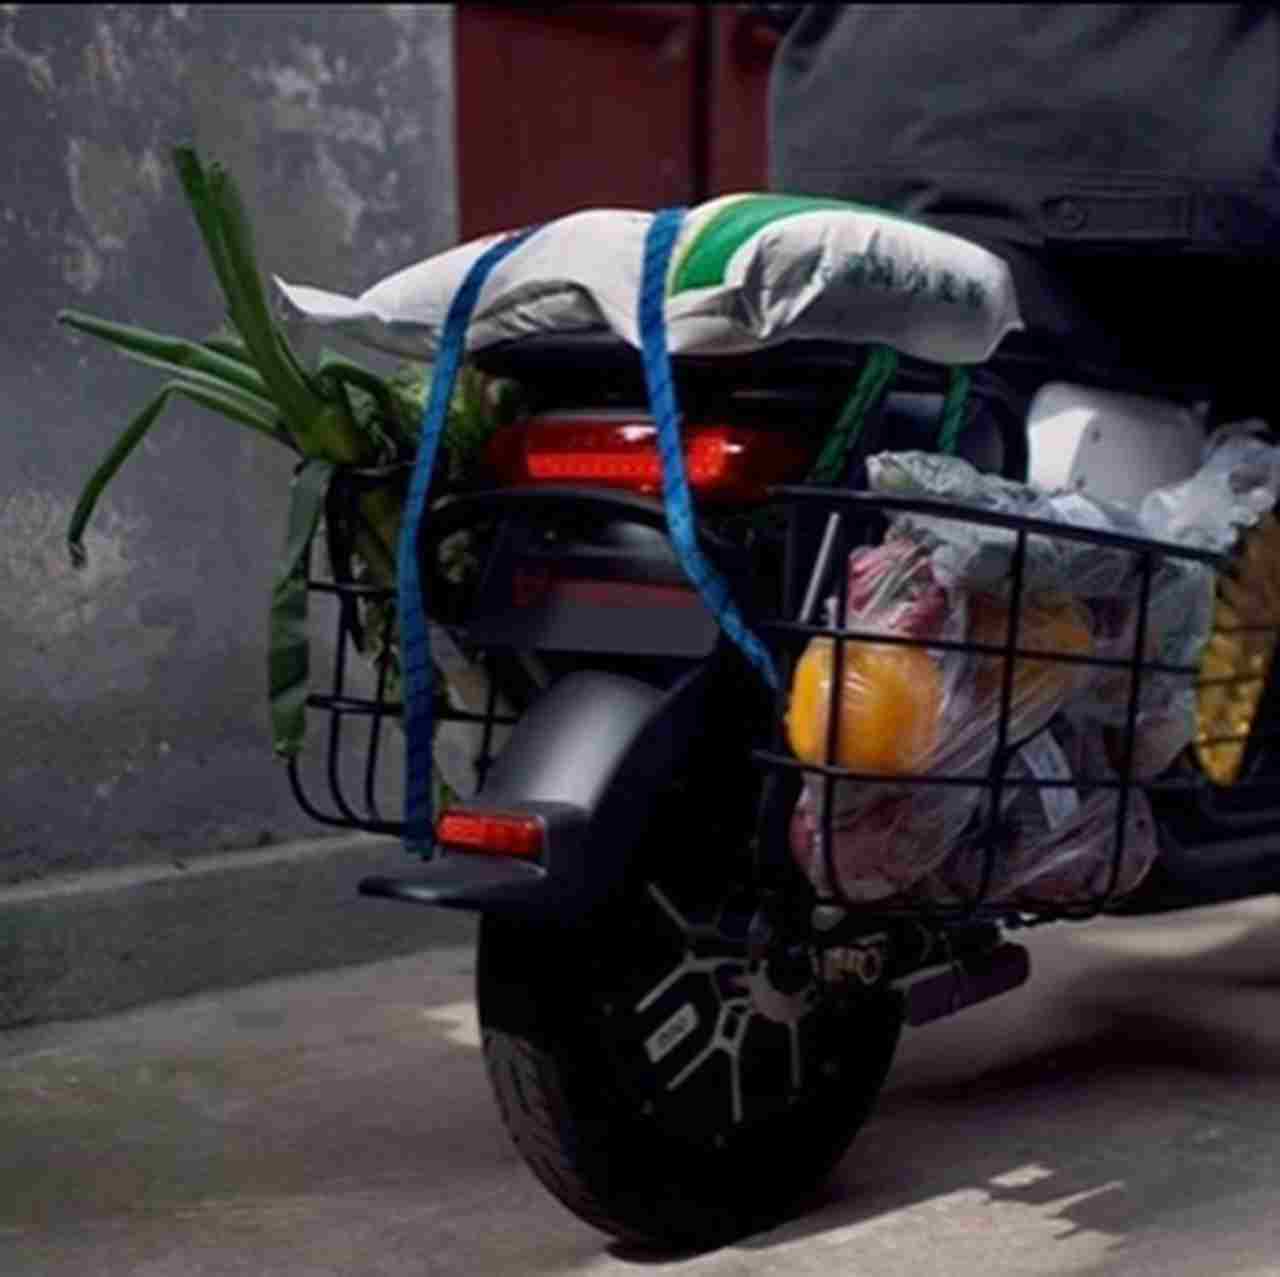 Milano, scooter gratis per i medici contro il coronavirus